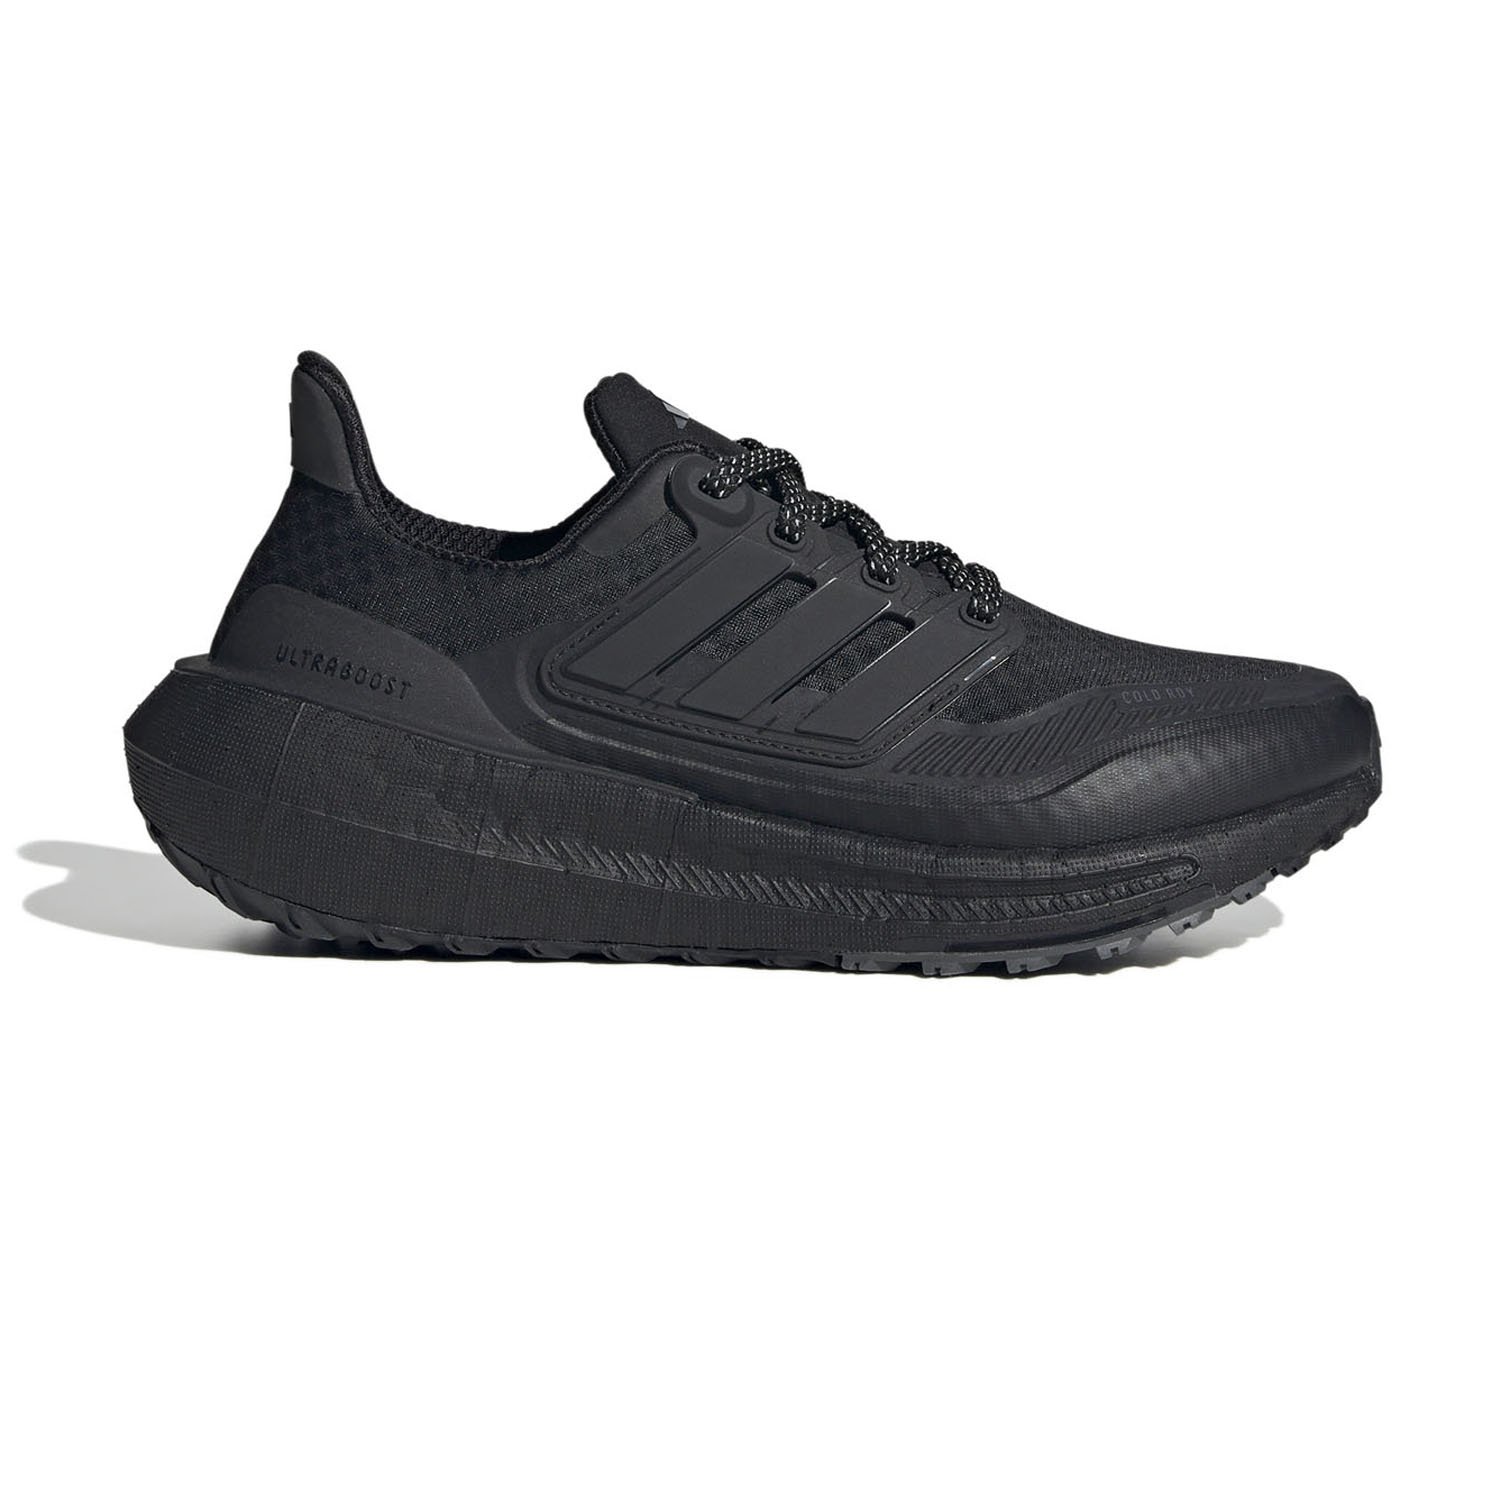 Adidas Ultraboost Light C. Kadın Koşu Ayakkabısı - Siyah - 1